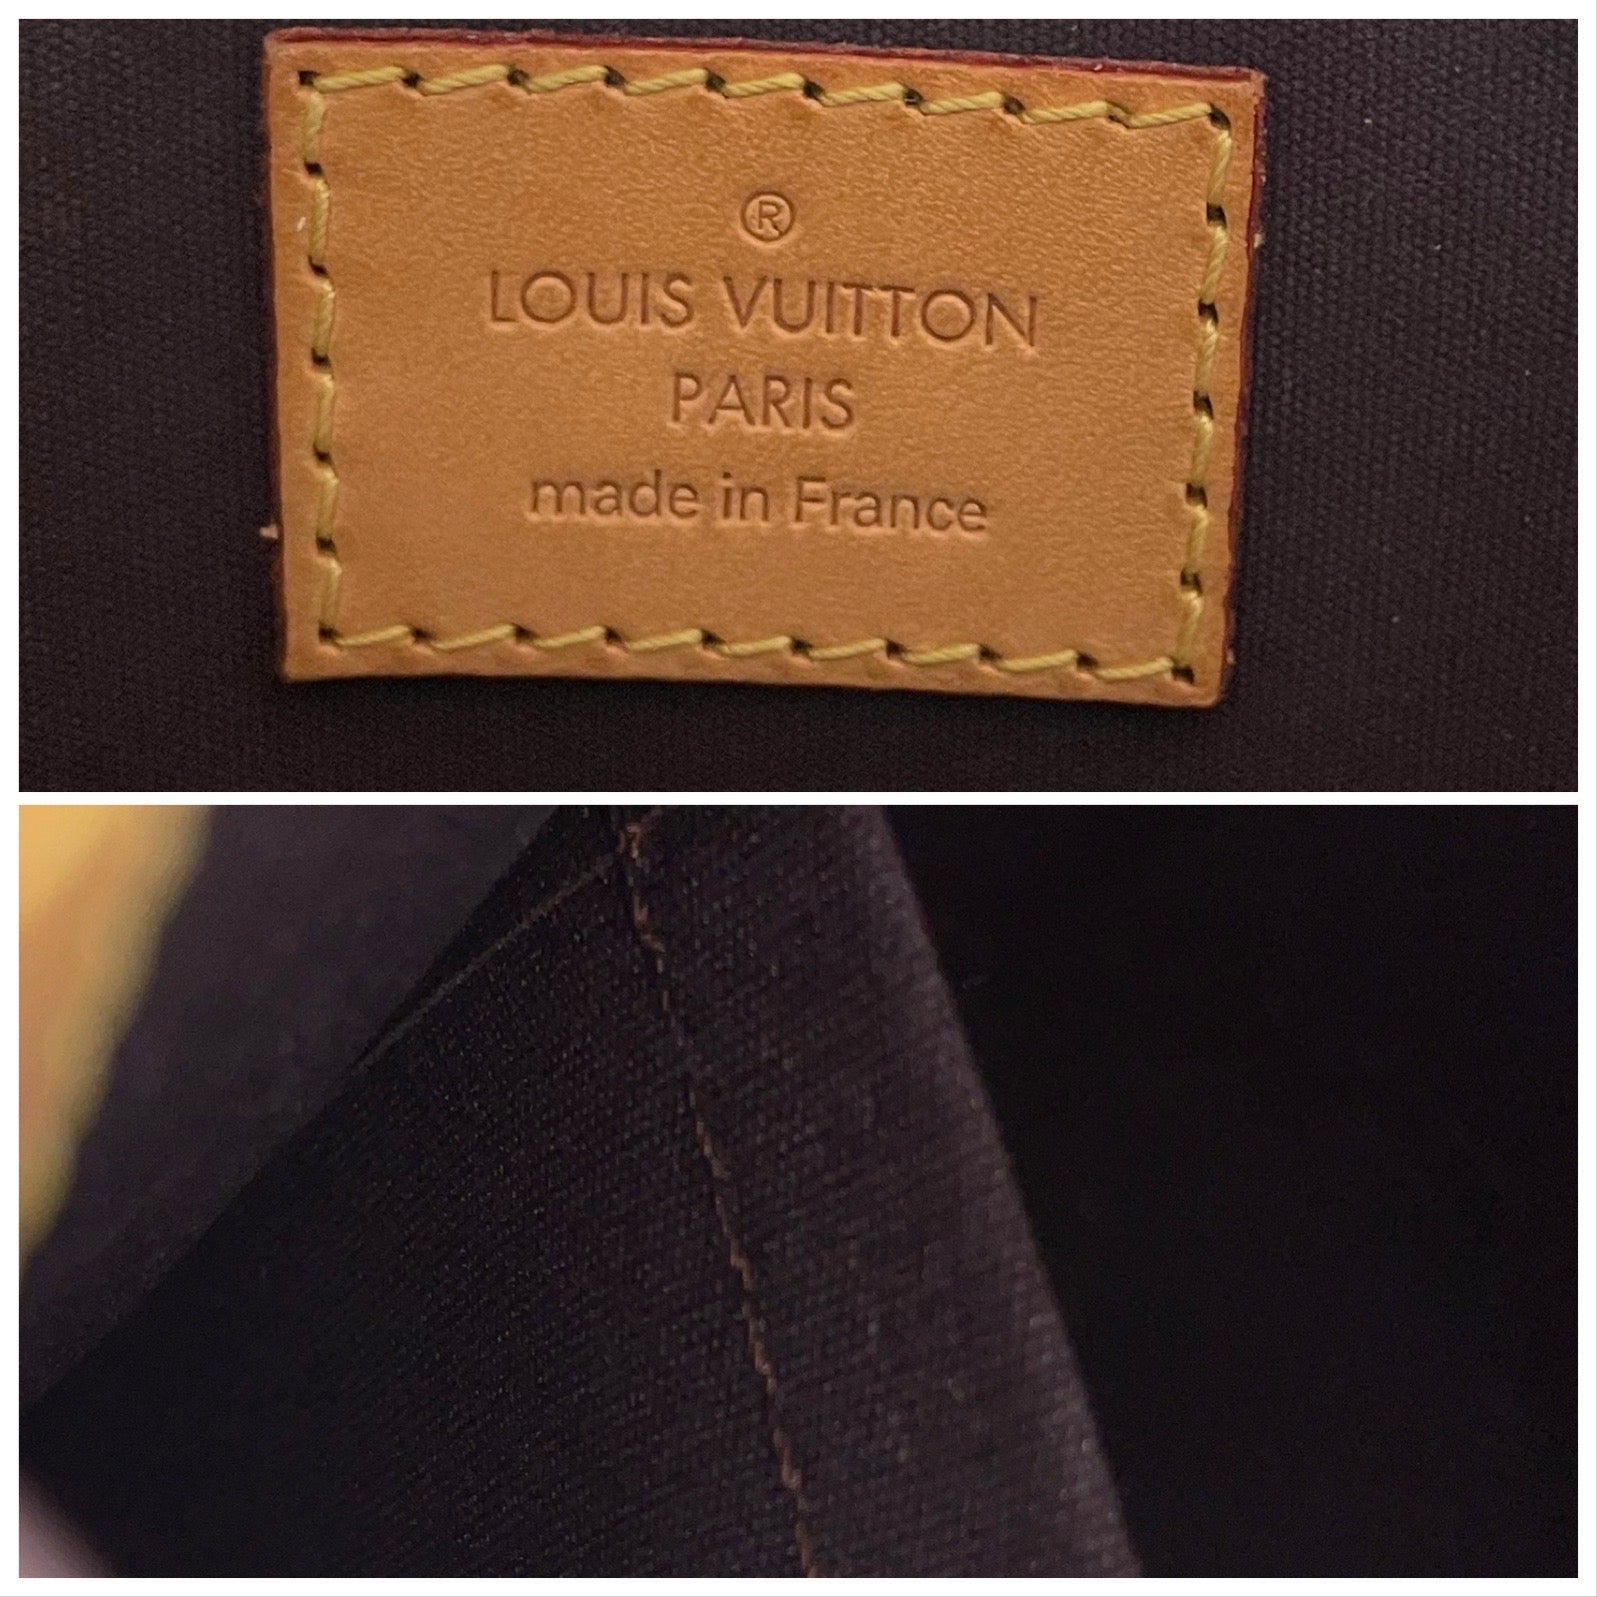 Louis Vuitton Vernis Amarante SoBe – My Haute